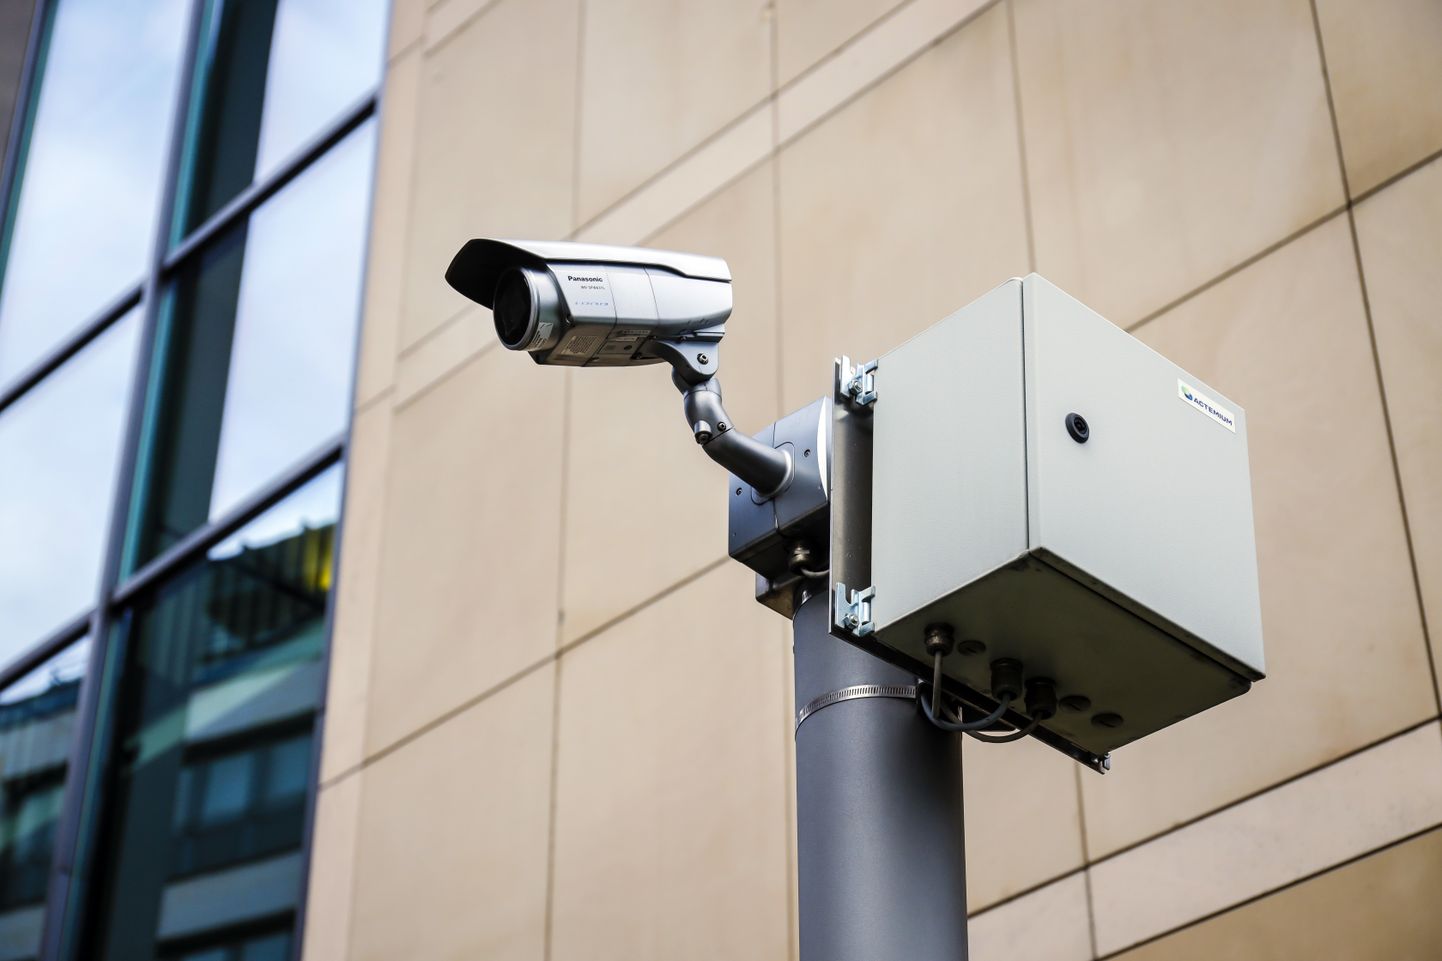 Tehismõistus jälgib 300 kaameraga Eilati linnas toimuvad